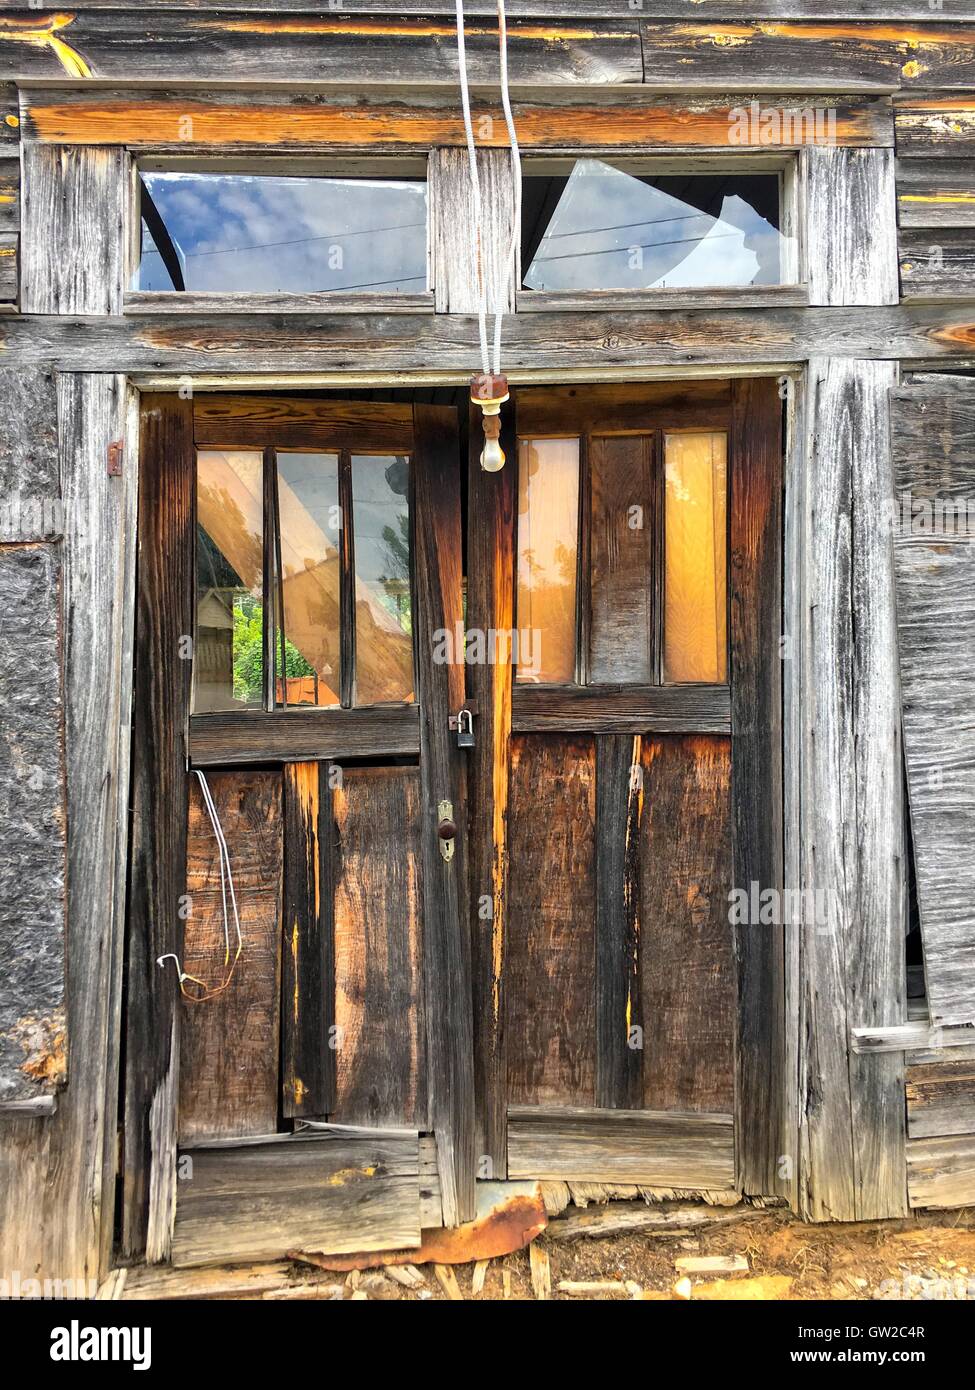 Les portes d'entrée d'un vieux hangar en bois abandonnés. Une lumière est descendu et le verre en double est cassée. Banque D'Images